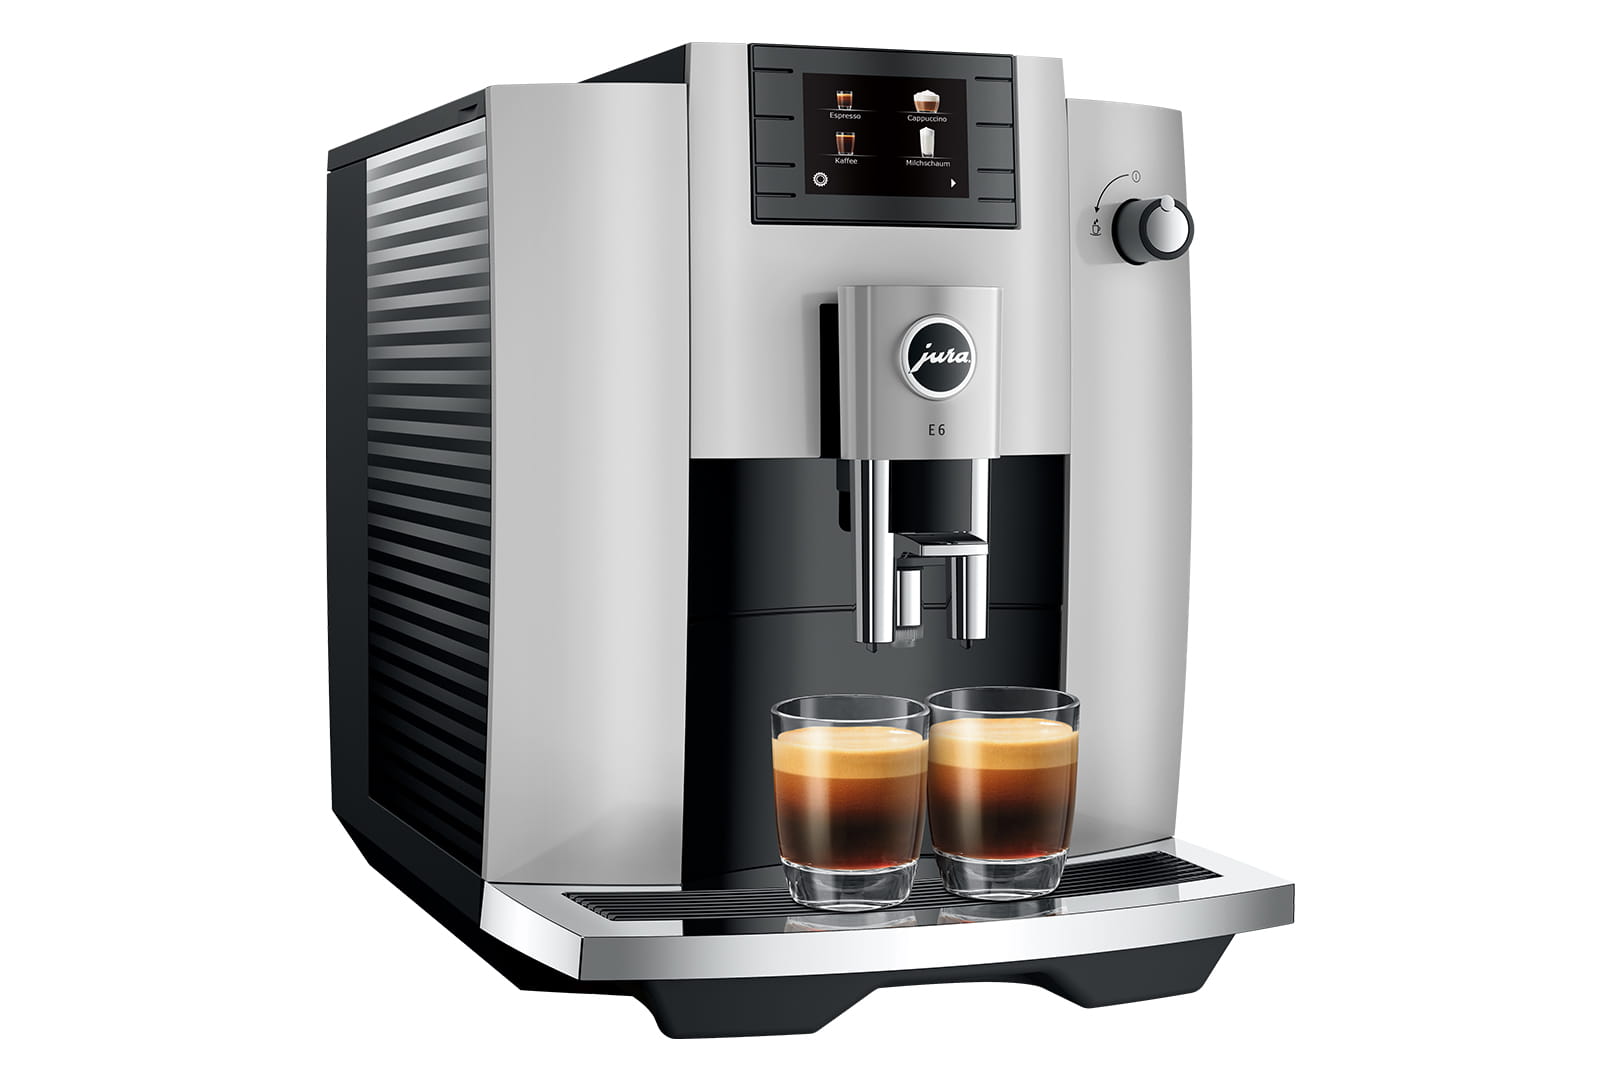 JURA E6 platinum espresso machine